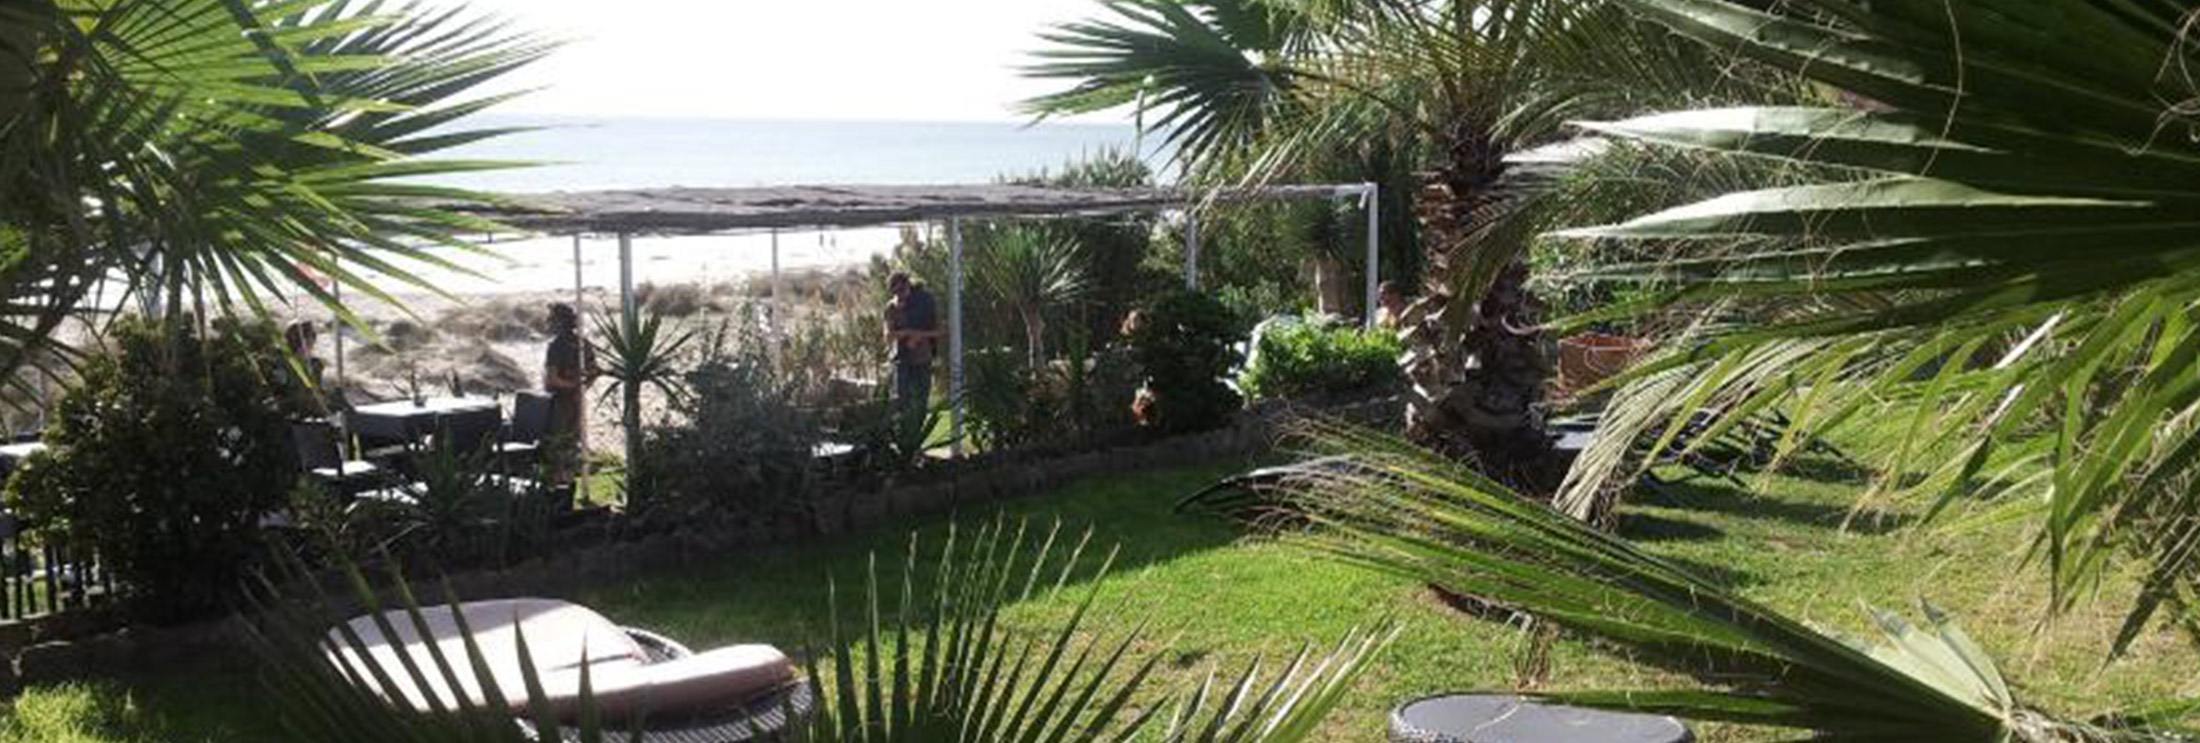 Arte-Vida-Beach-bar-hotel-restaurant-Tarifa-Los-Lances-North-Kitesurf-Spot